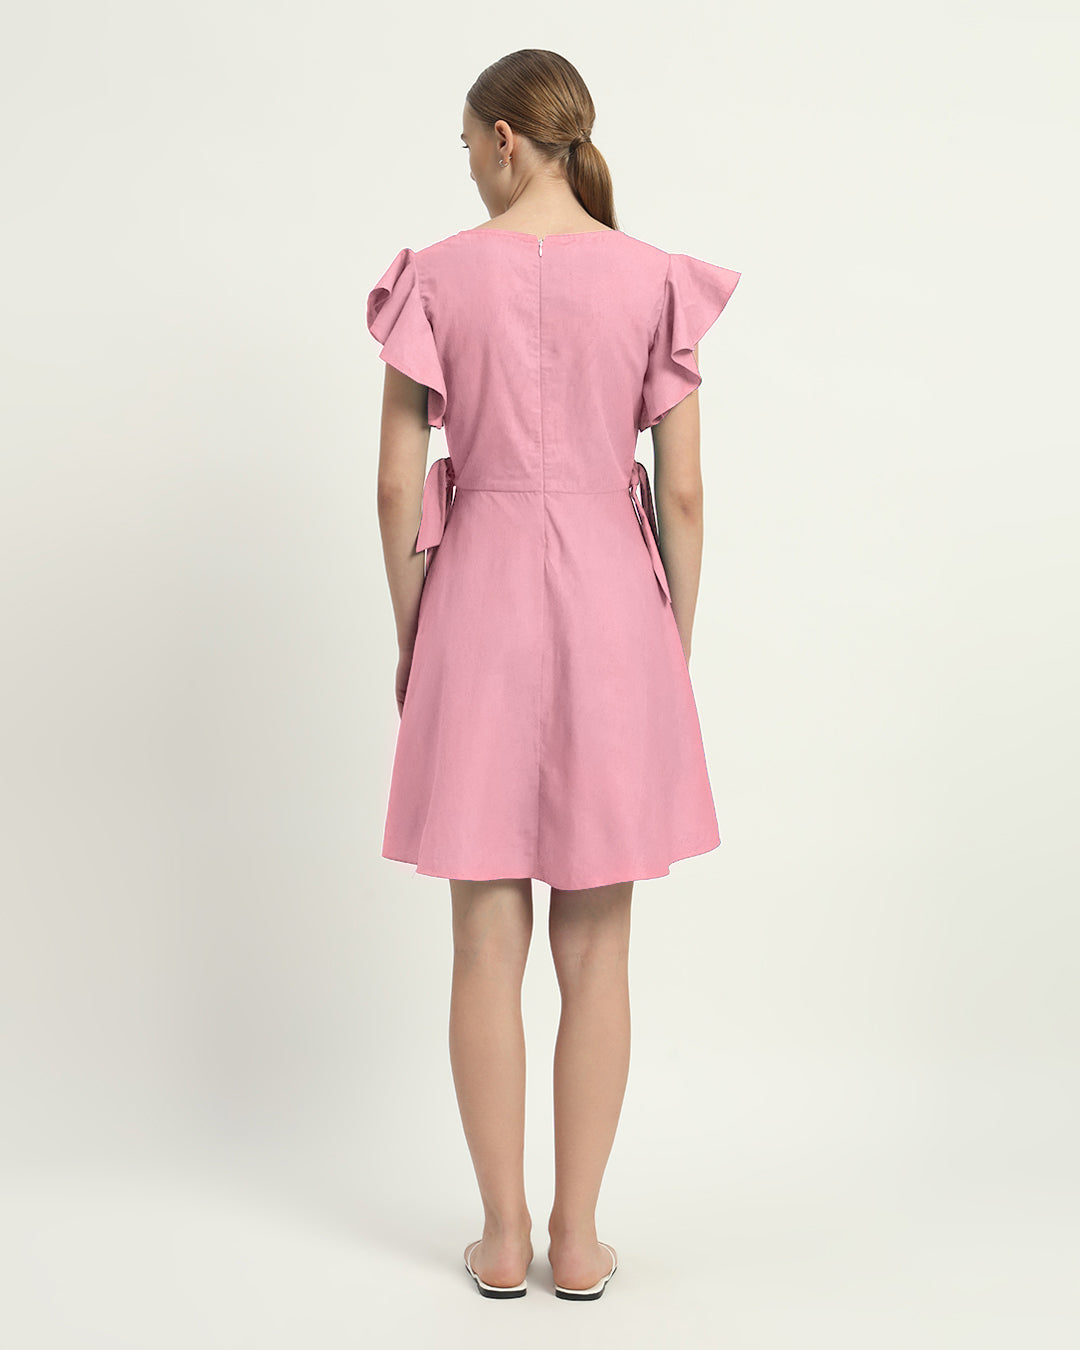 The Fondant Pink Fairlie Cotton Dress